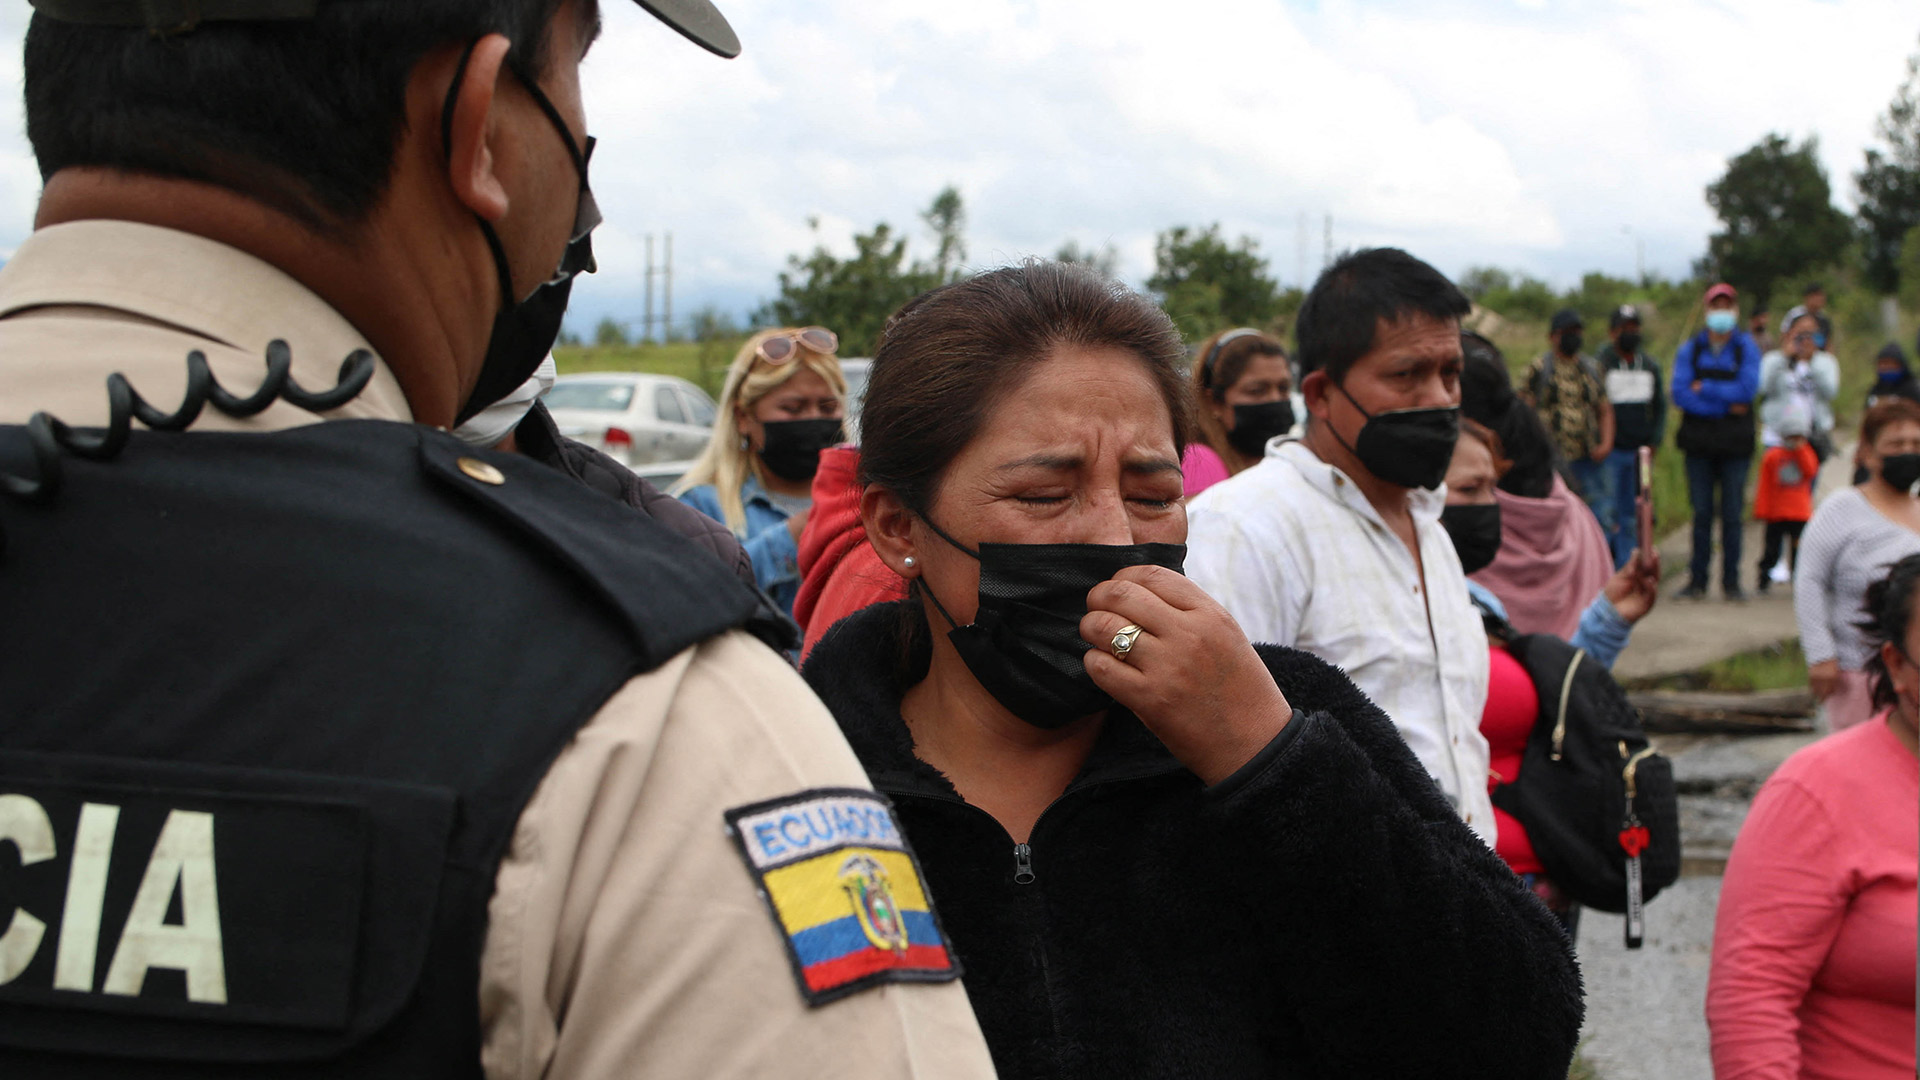 Familiares de presos son vistos fuera de la prisión CRS Turi después de un motín en Cuenca, Ecuador, el 3 de abril de 2022. - El Gobierno ecuatoriano moviliza féretros y atiende a los heridos por el motín, según fuentes oficiales. (Foto de FERNANDO MACHADO / AFP)